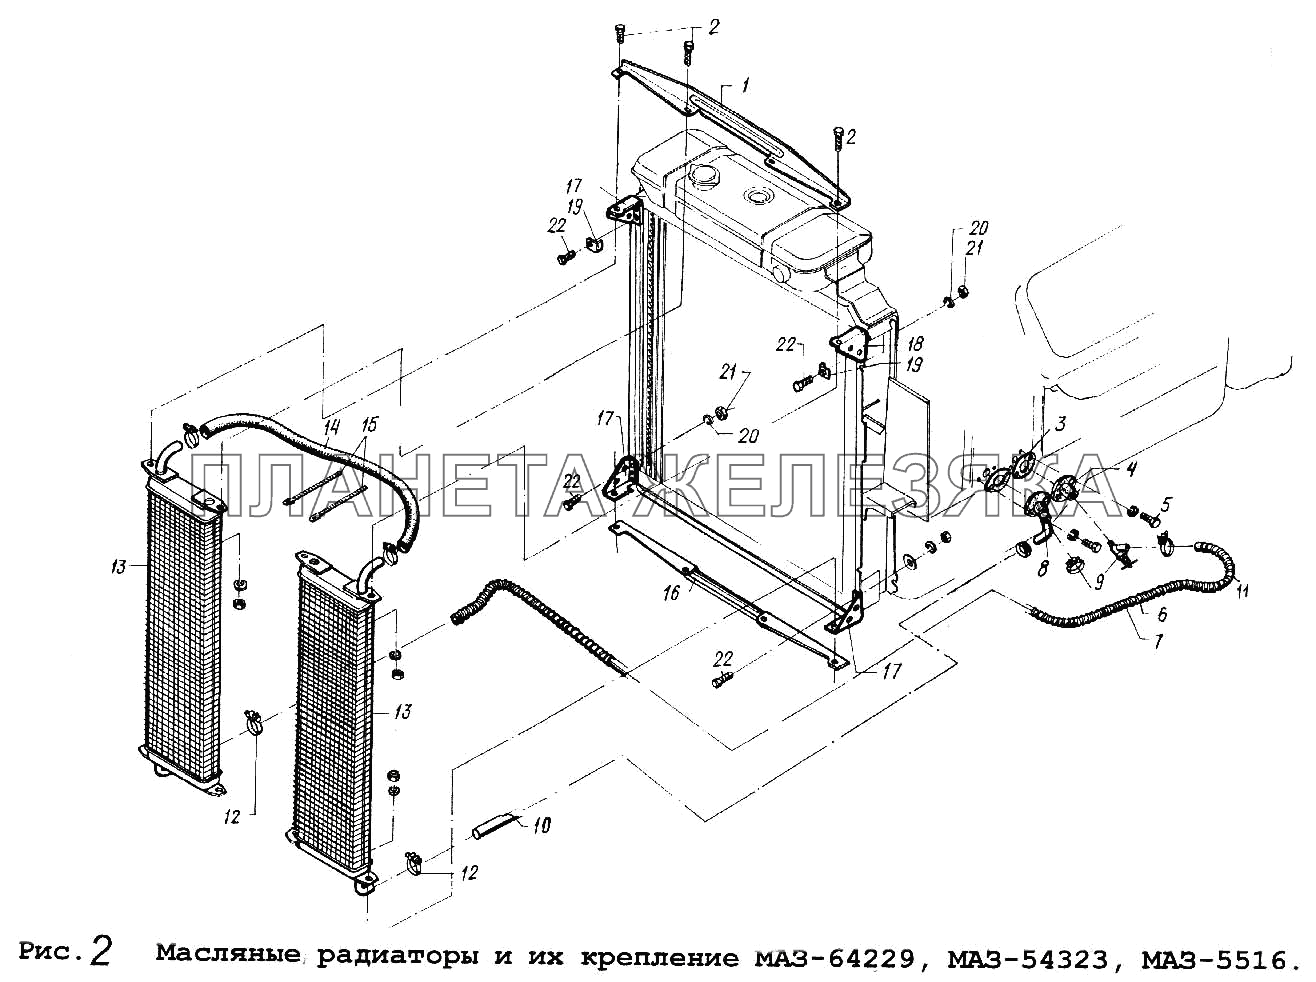 Масляные радиаторы и их крепление МАЗ-64229, МАЗ-54323,МАЗ-5516 МАЗ-54323